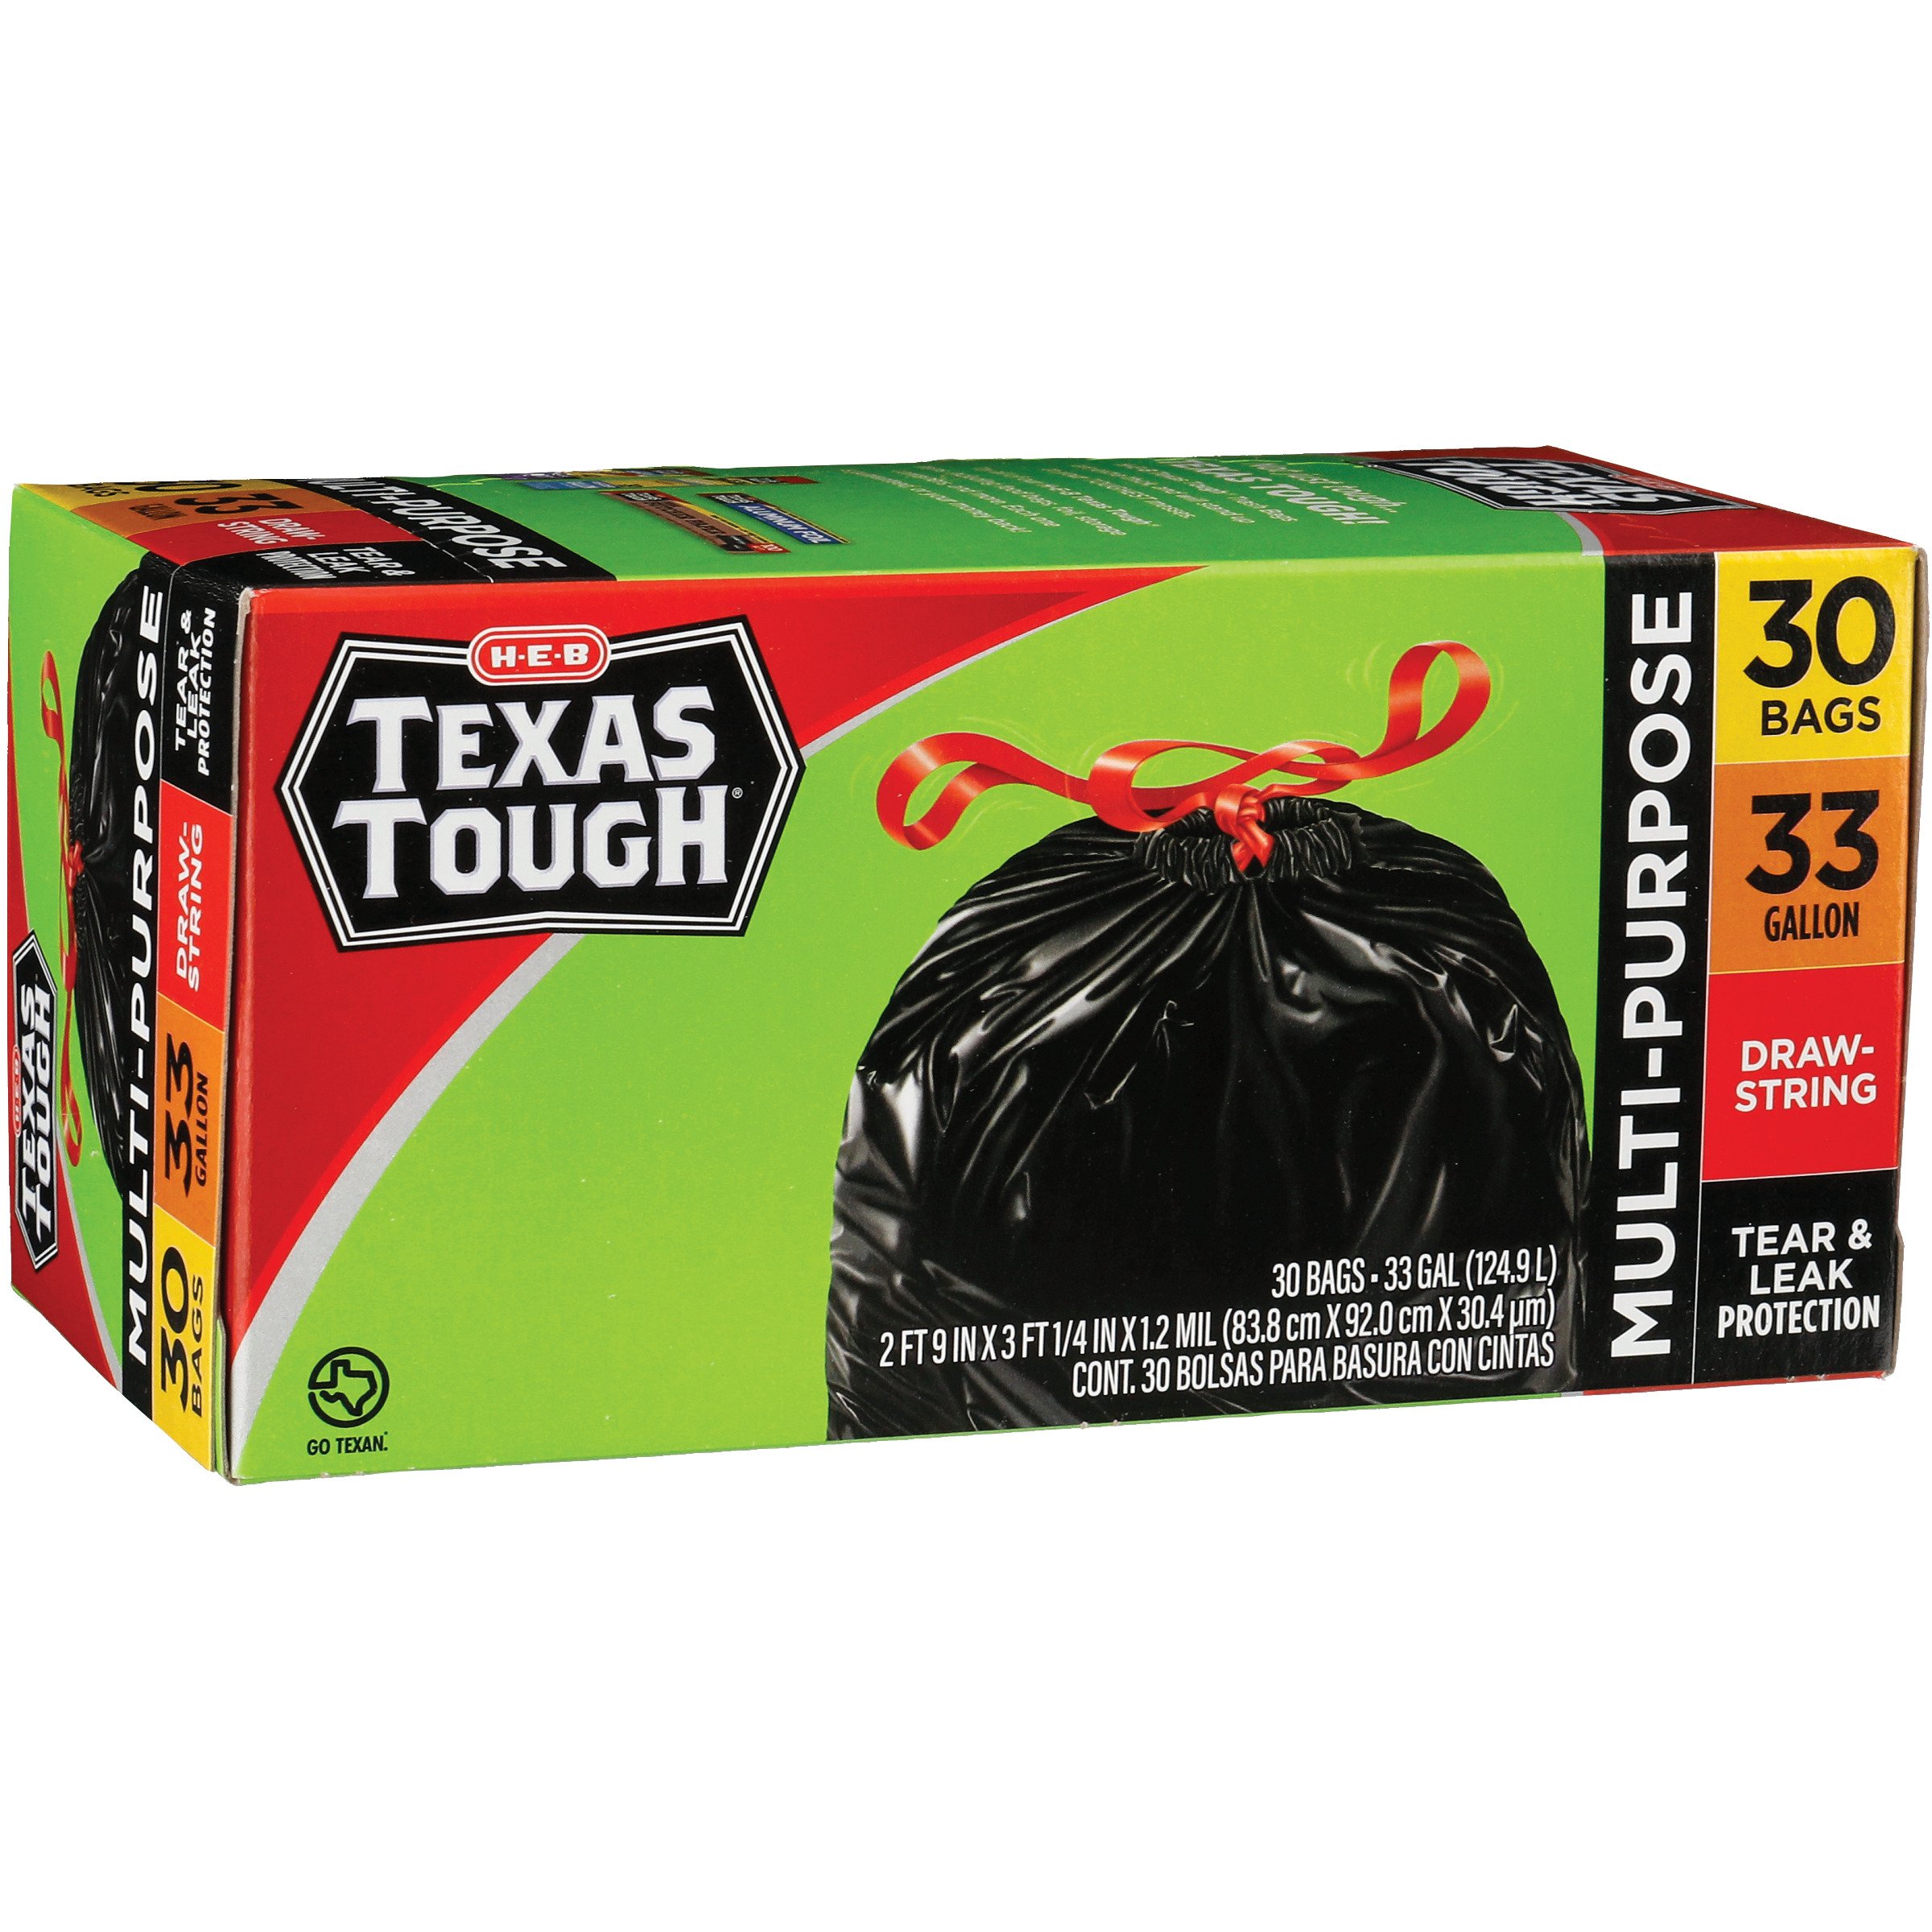 H-E-B Texas Tough Trash Compactor Bags, 18 Gallon - Shop Trash